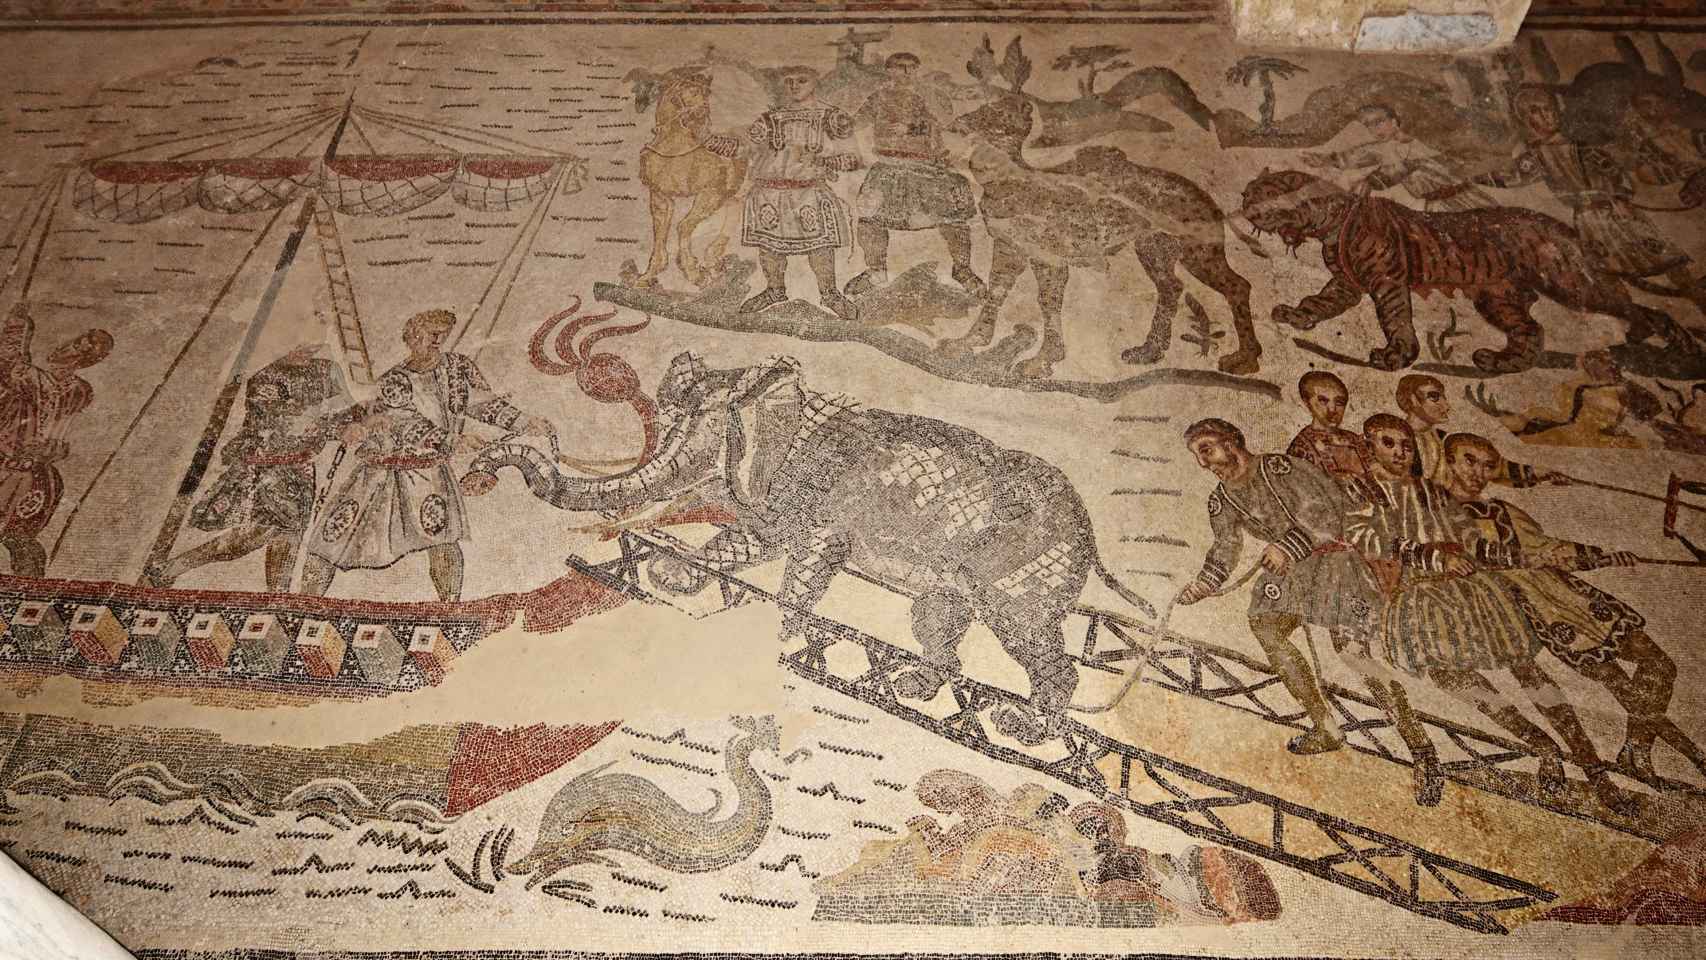 Mosaico de la villa del Casale (Sicilia), donde se recrea la embarcación de un elefante.